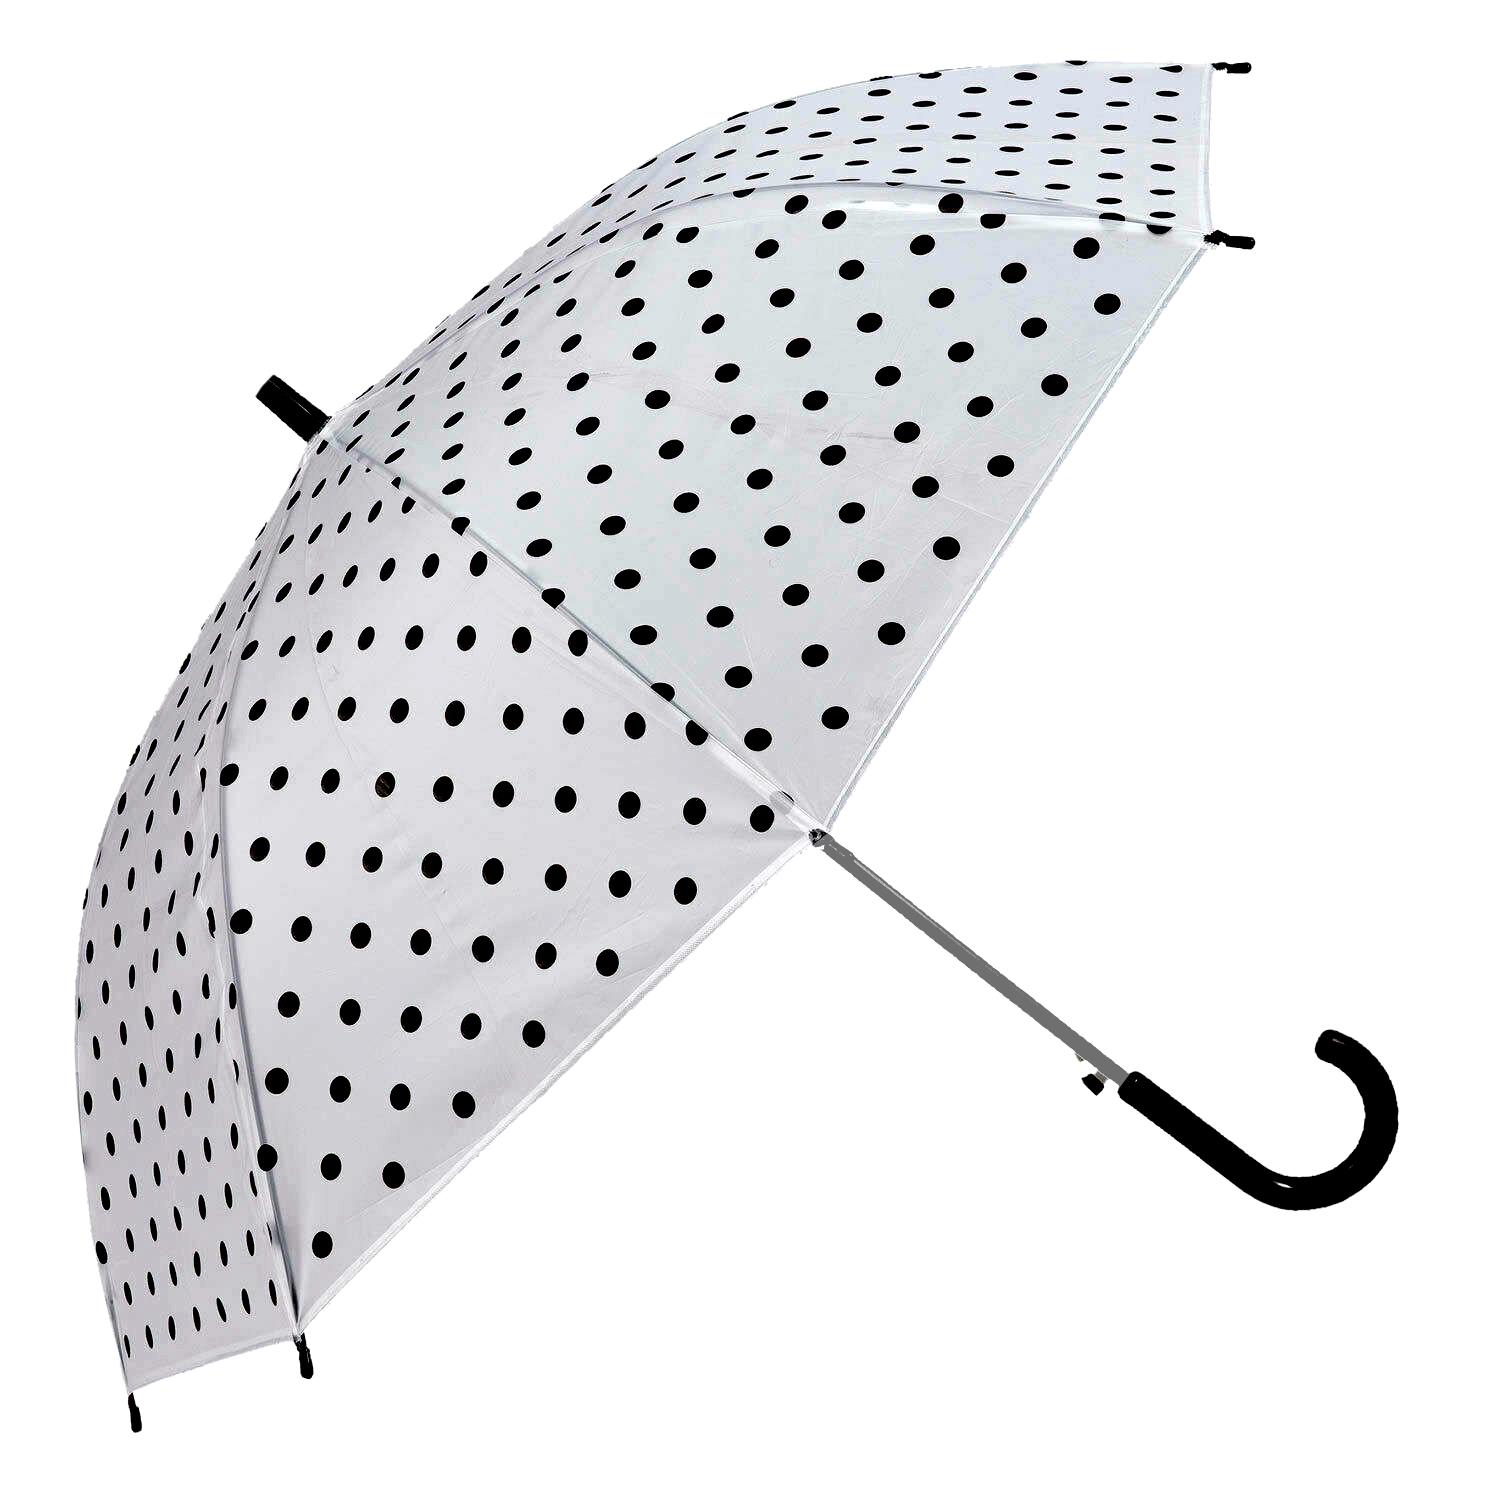 SALE Regenschirm weiß mit schwarzen Punkten, Durchmesser ca. 80 cm